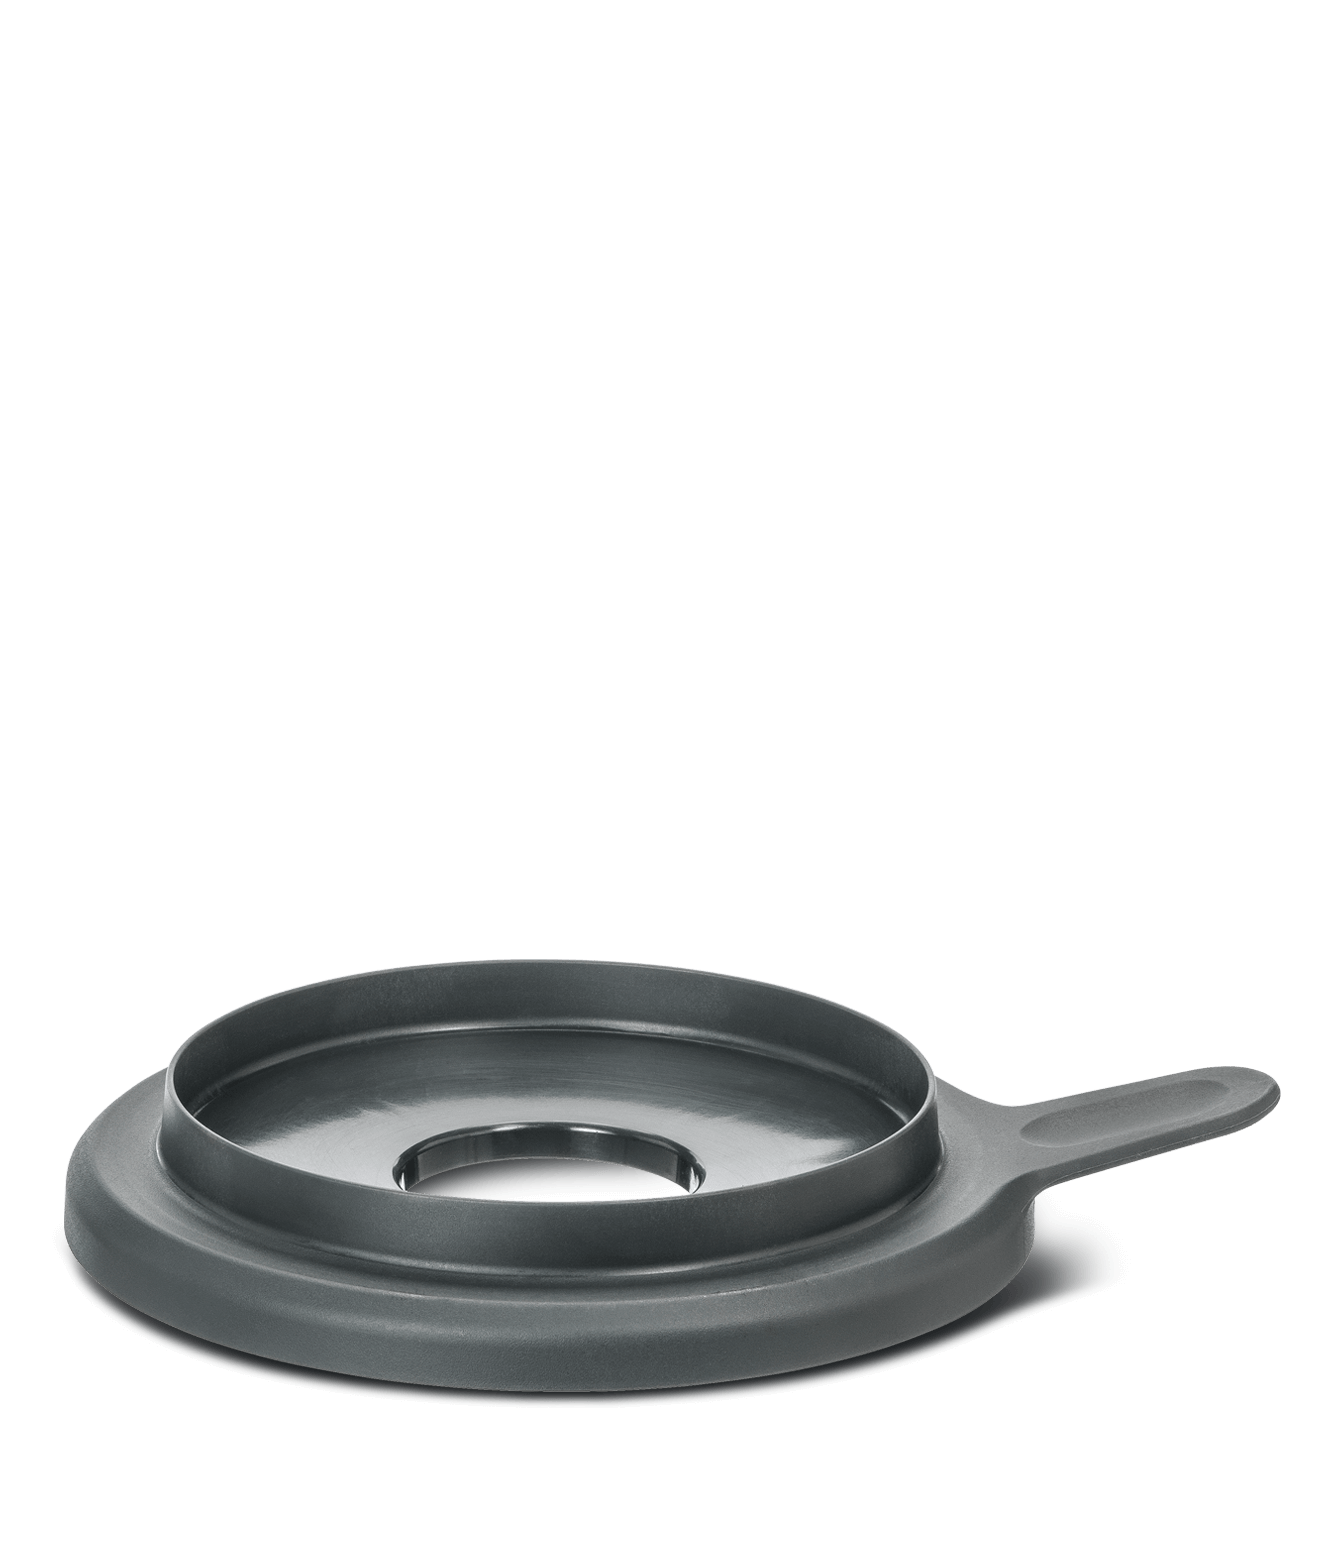 Protección contra fugas de agua y aire Mixcover el accesorio indispensable para su procesador de comida Roller Coaster Grey Tapa de silicona para Vorwerk Thermomix TM5 TM6 Olla para Mezclar 